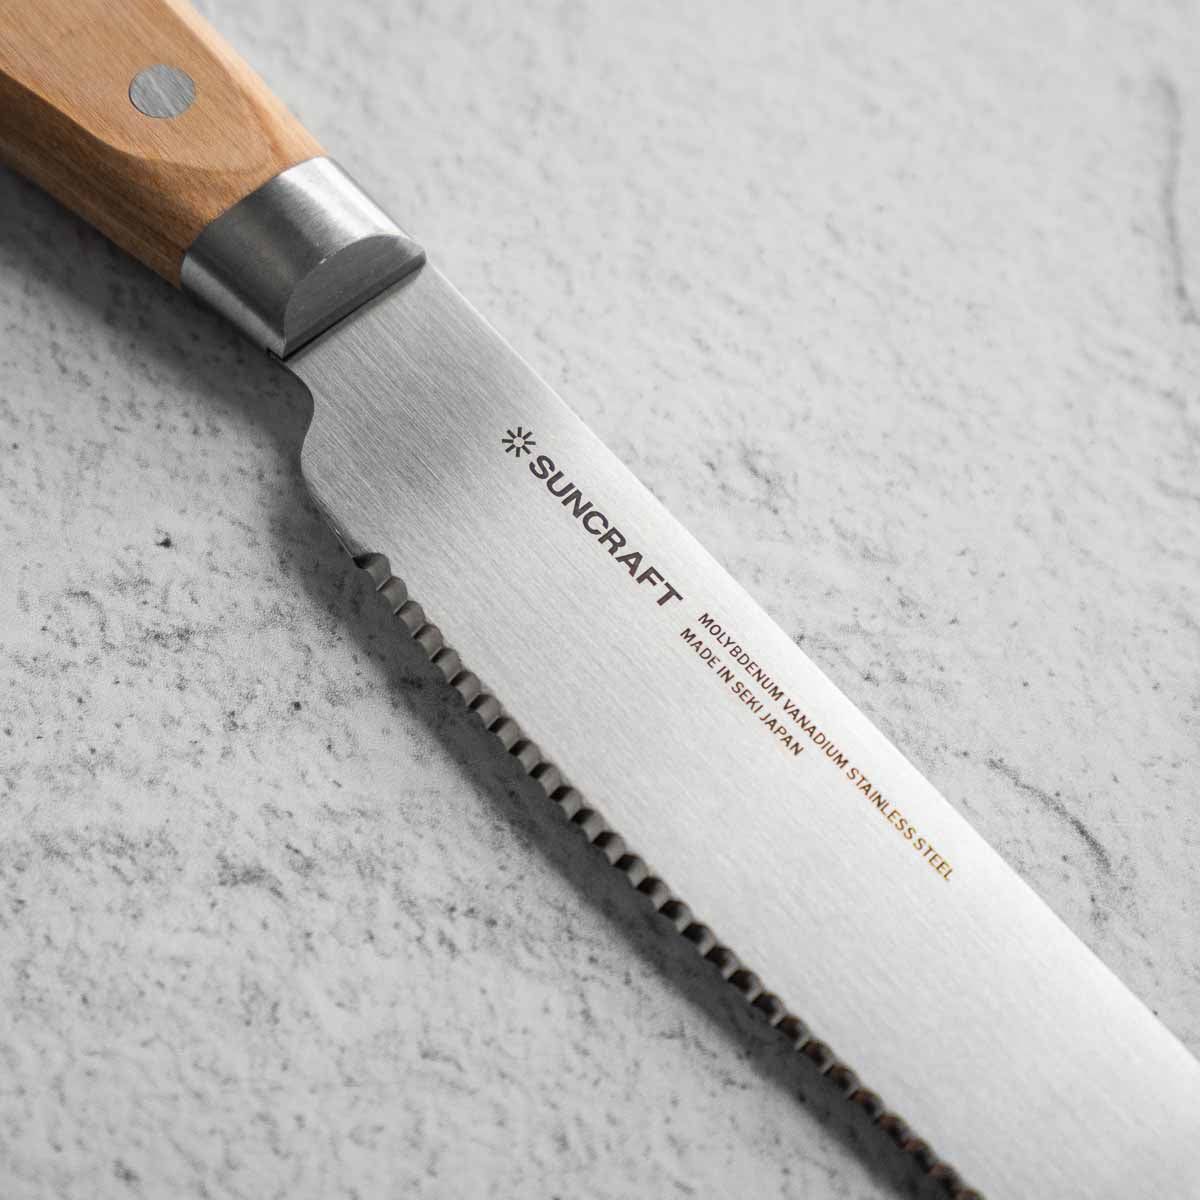 Suncraft "Seseragi" Bread Knife 21cm - Right Handed